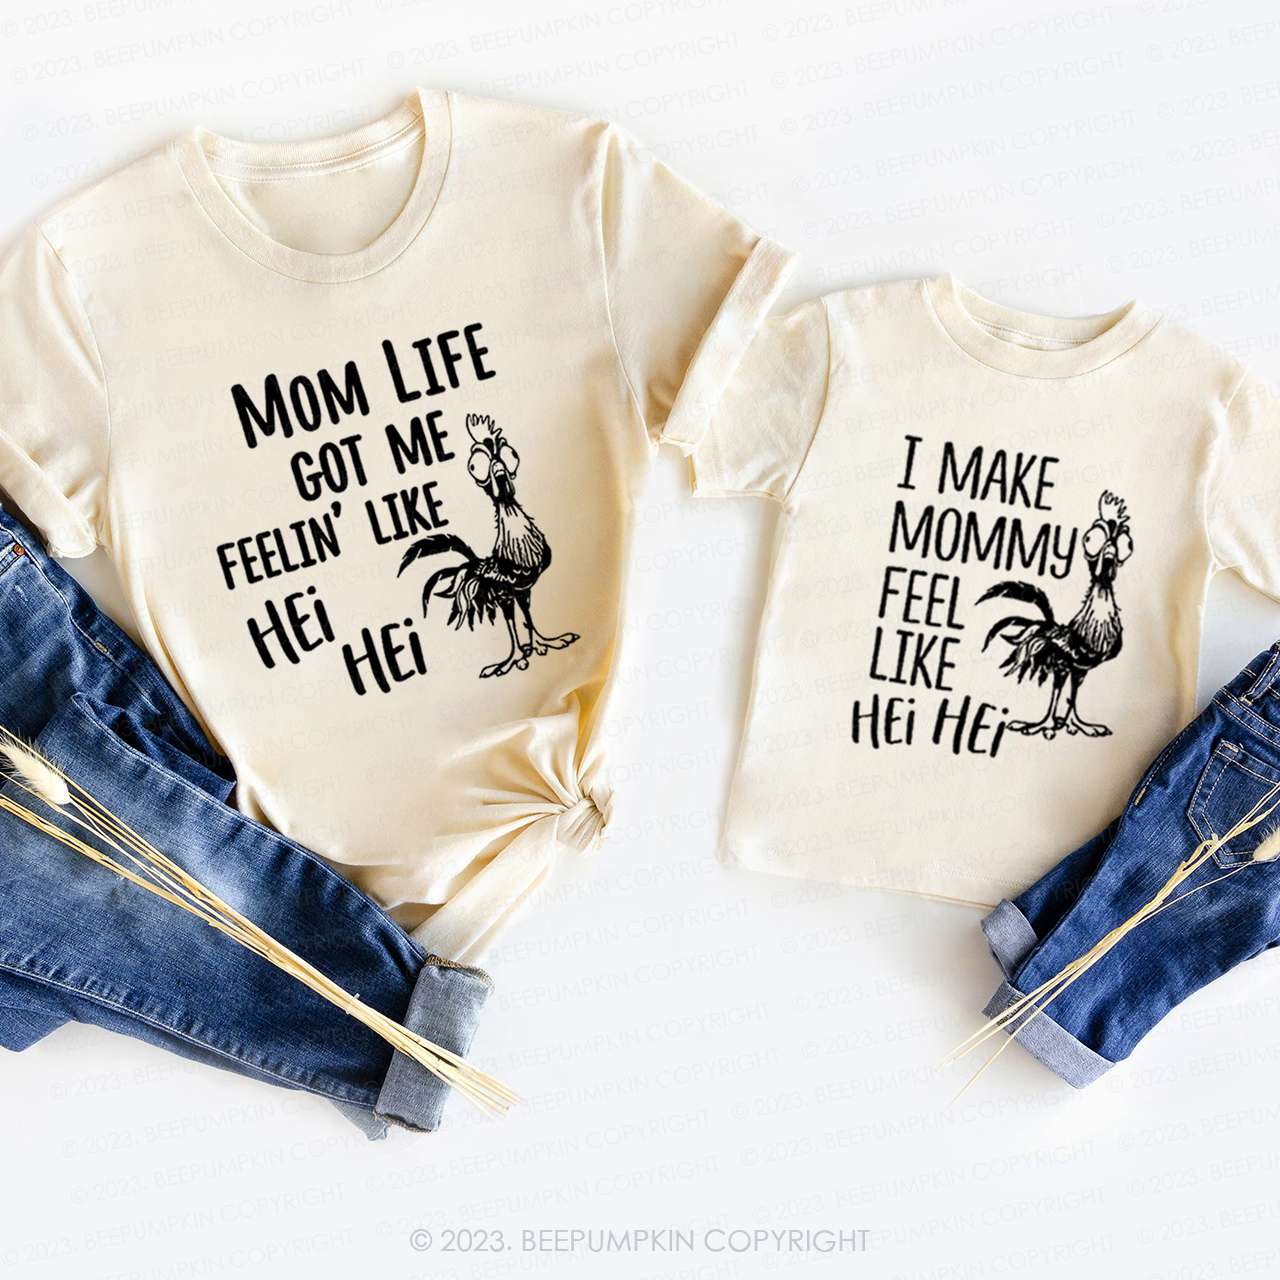 Mom Life Got Me Feelin' Like Hei Hei T-Shirts For Mom&Me